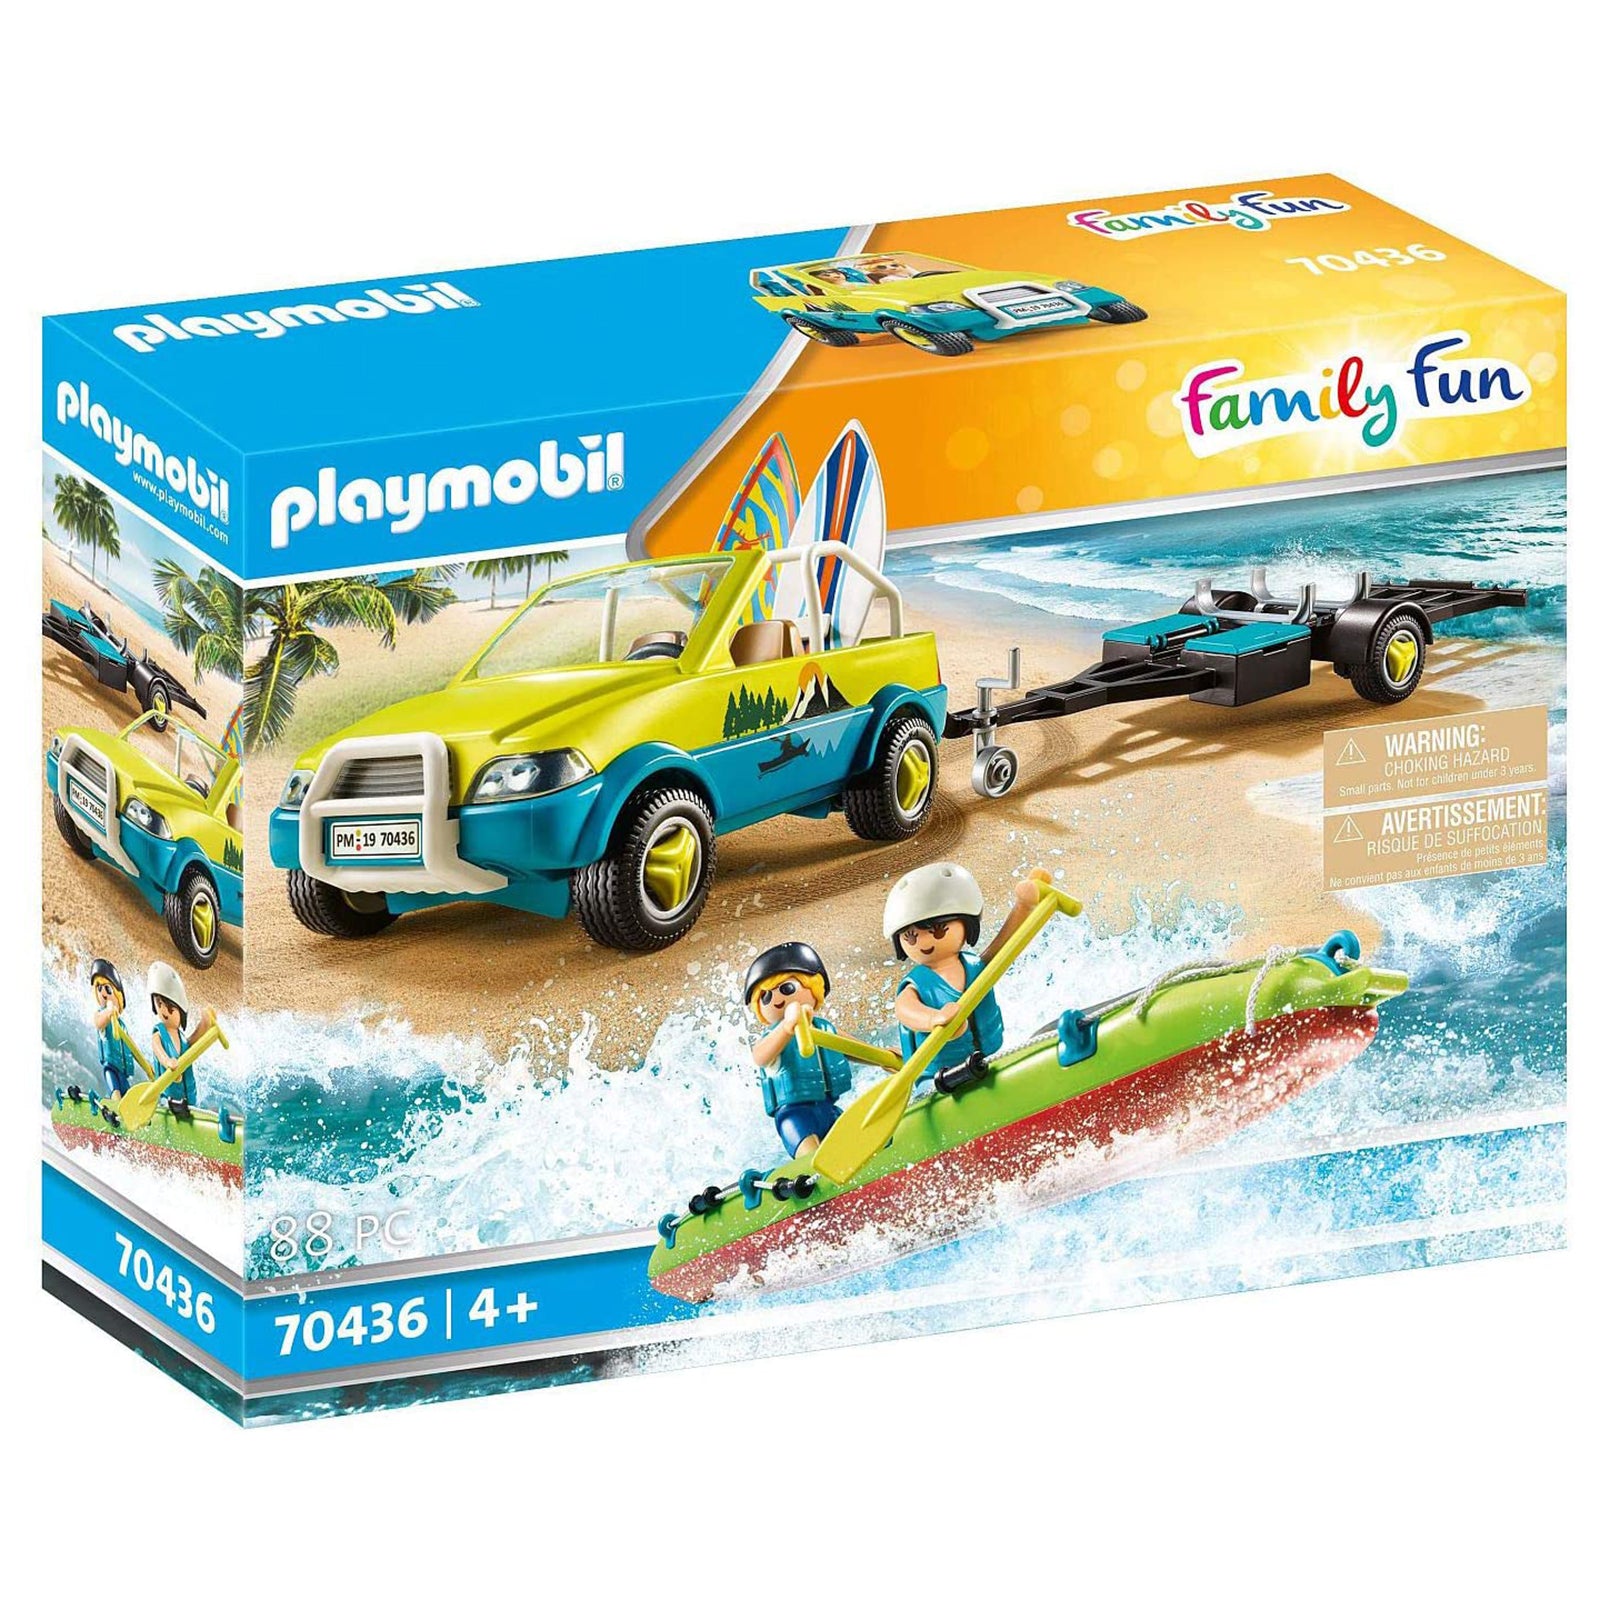 Playmobil Family Fun Beach Car With Canoe 70436